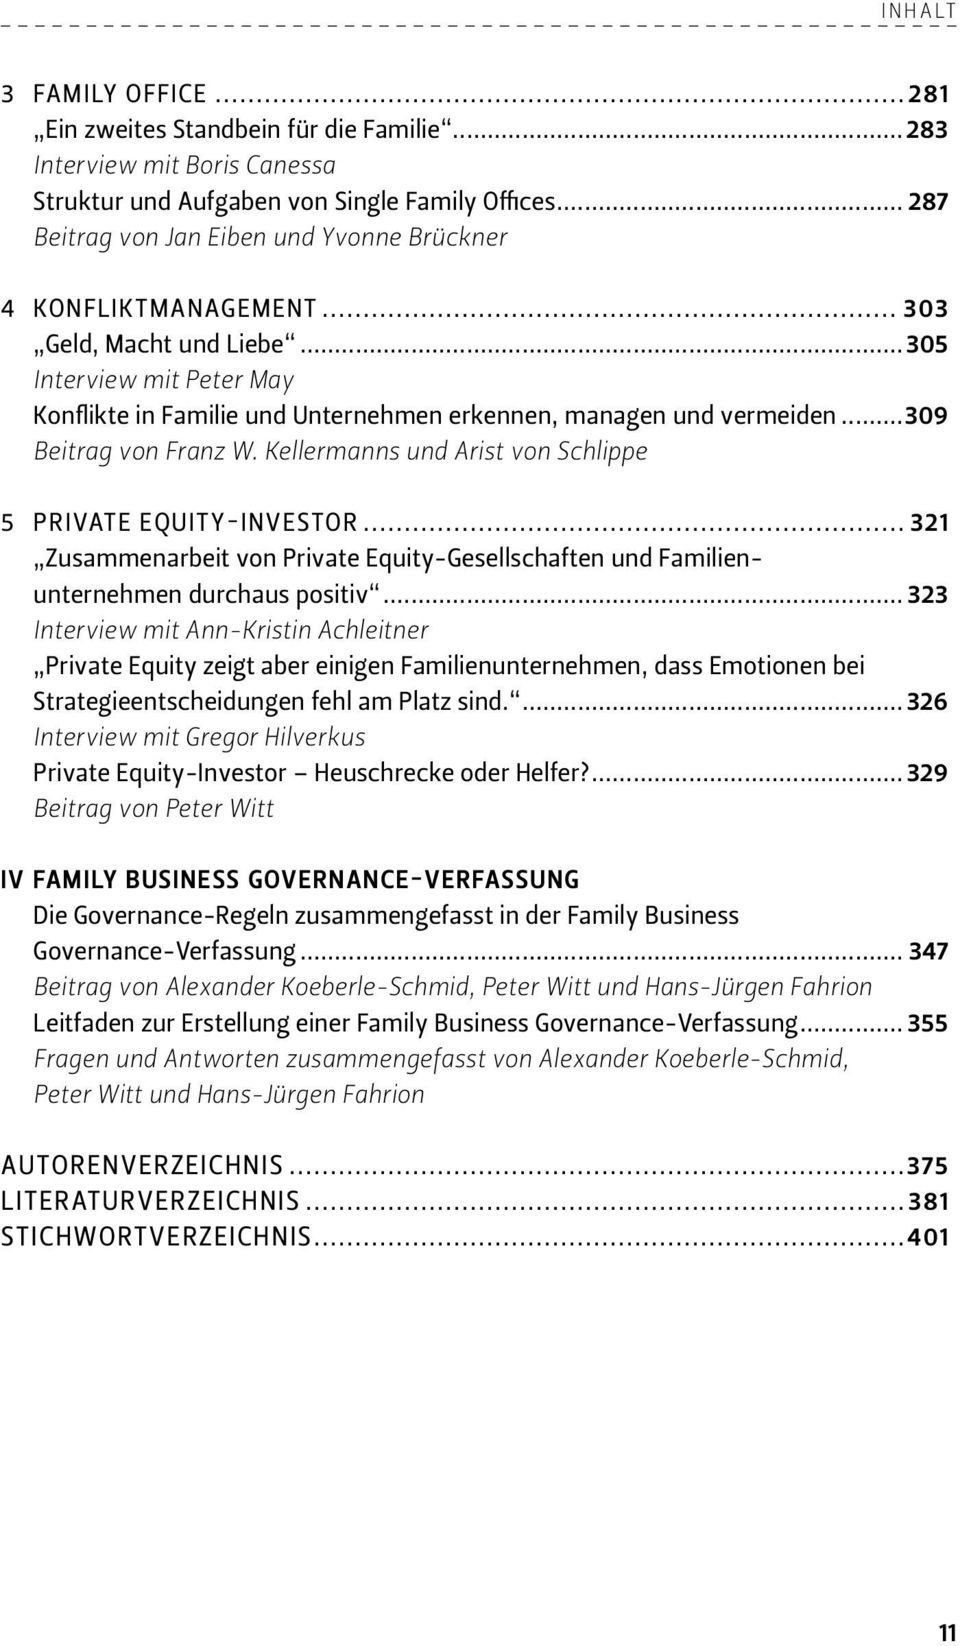 ..309 Beitrag von Franz W. Kellermanns und Arist von Schlippe 5 PRIVATE EQUITY-INVESTOR... 321 Zusammenarbeit von Private Equity-Gesellschaften und Familienunternehmen durchaus positiv.